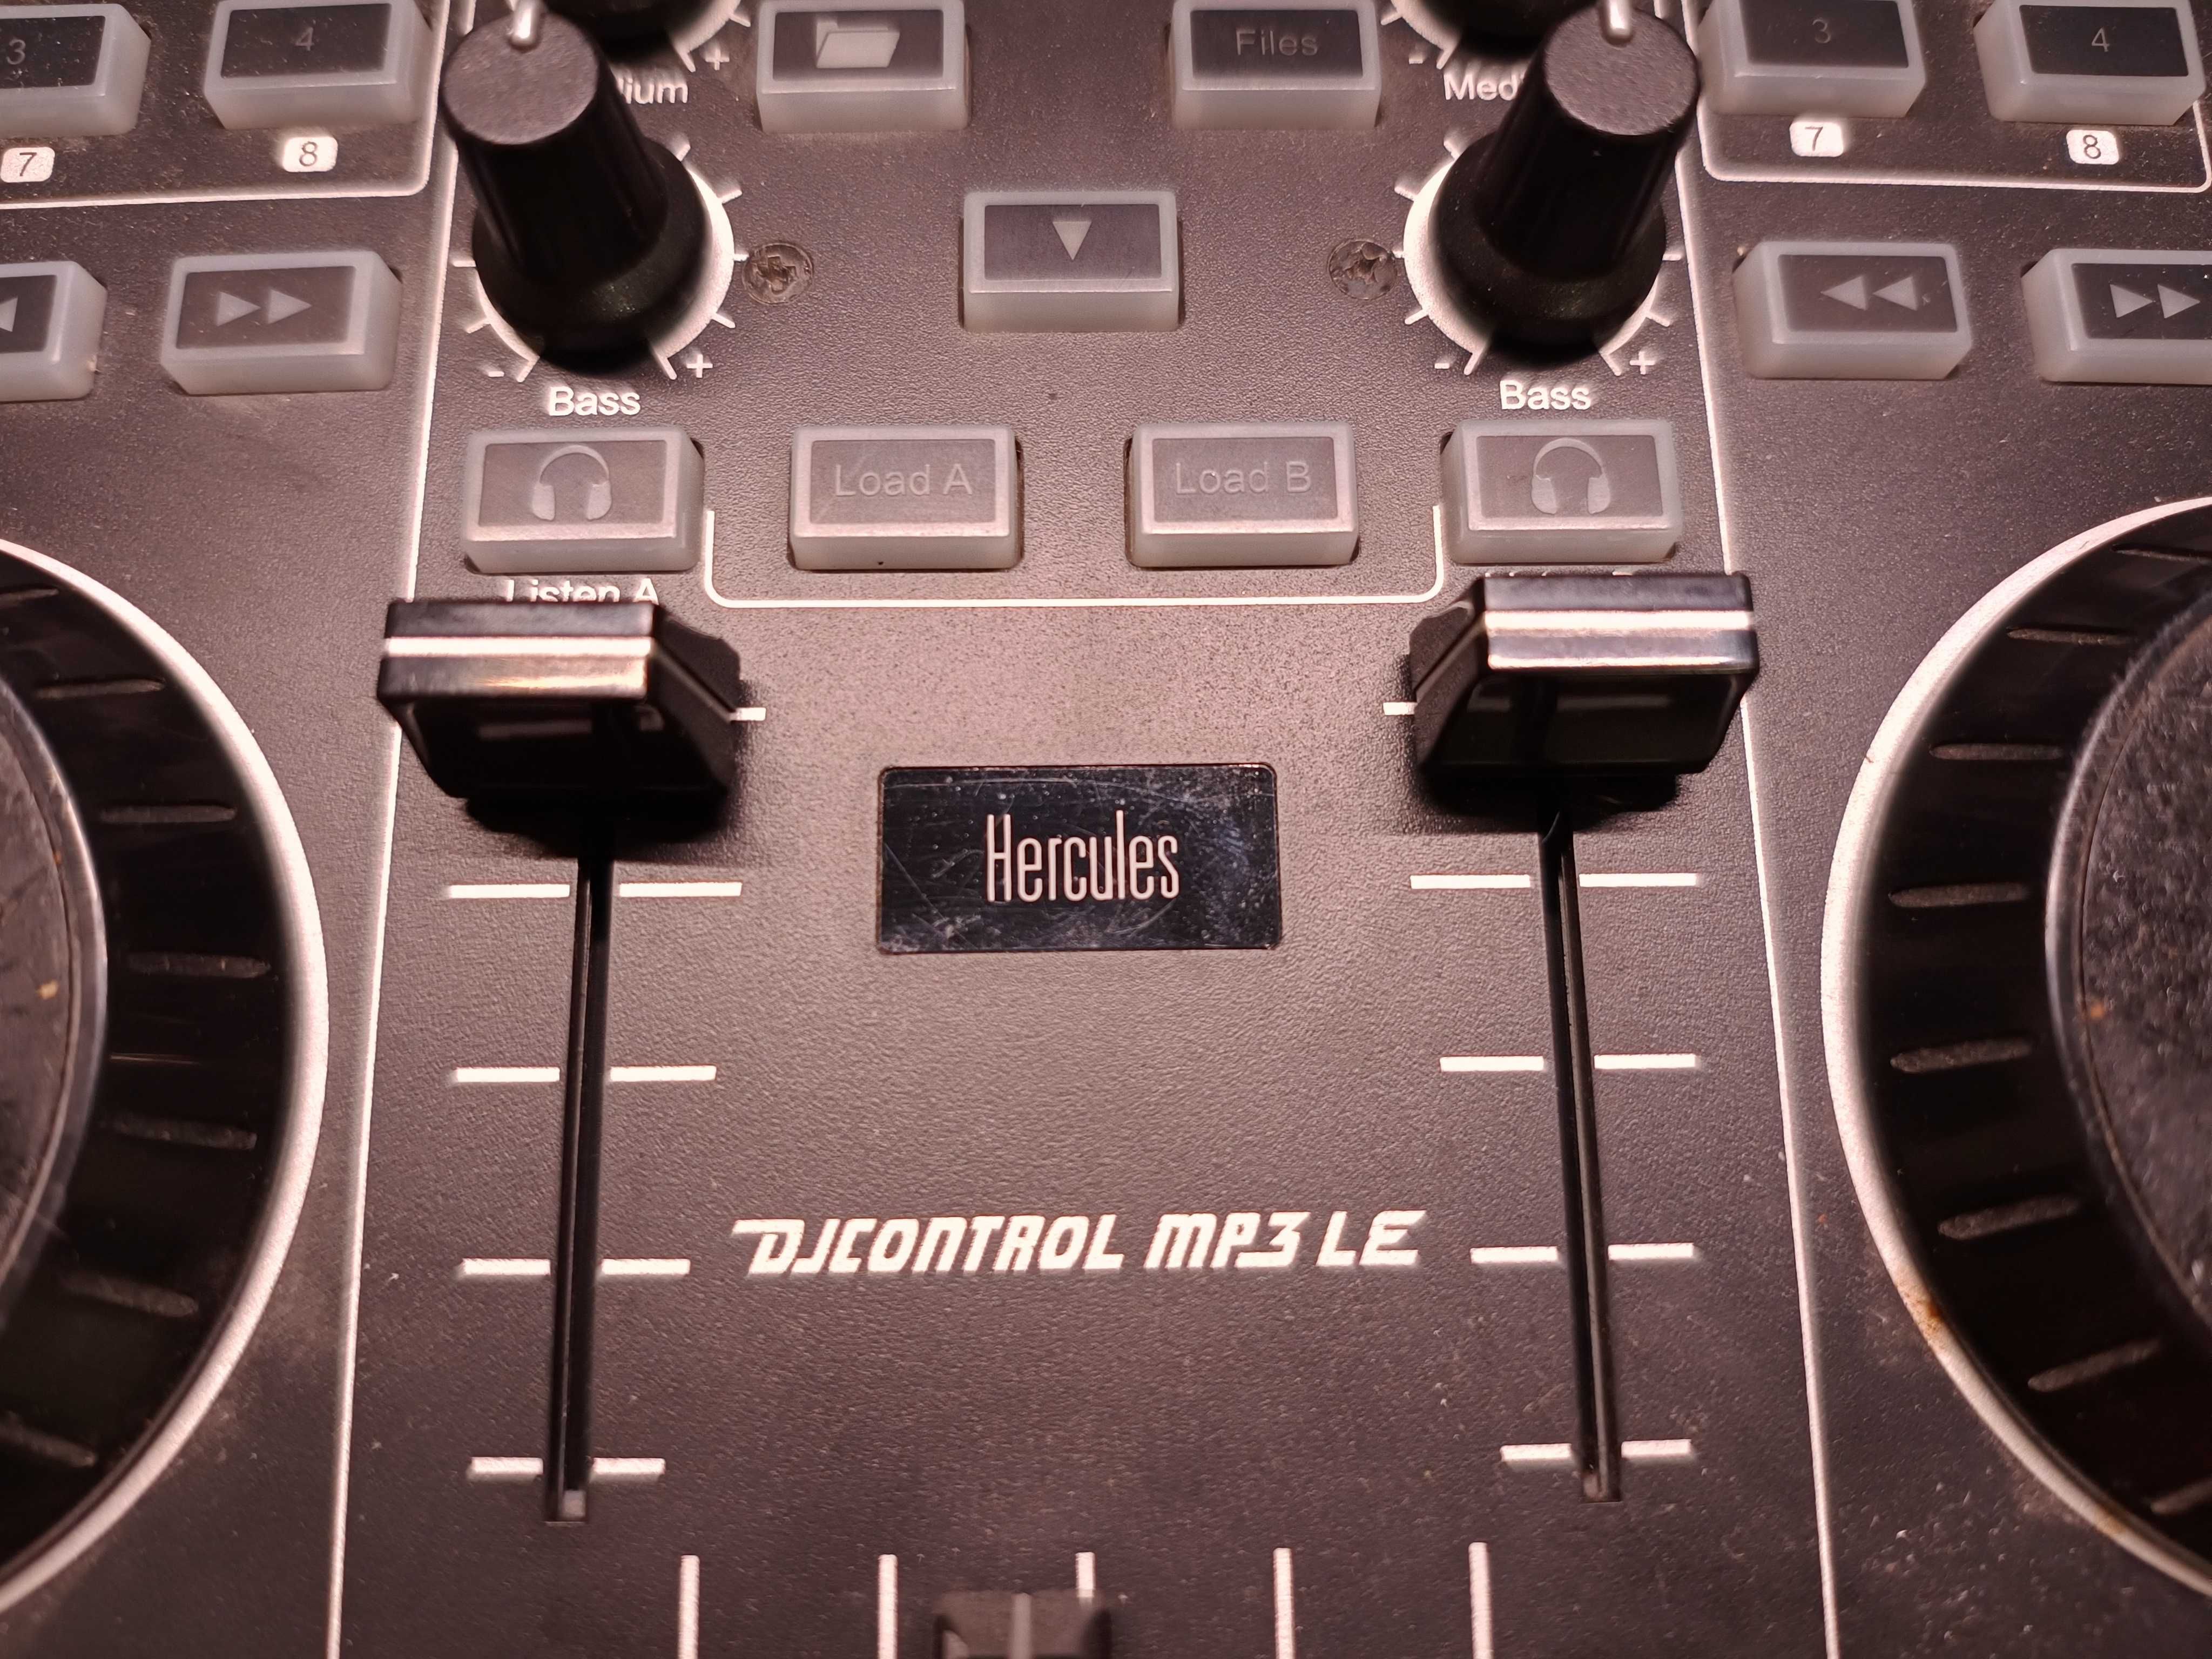 Consola DJ Hercules DJ Control MP3 LE